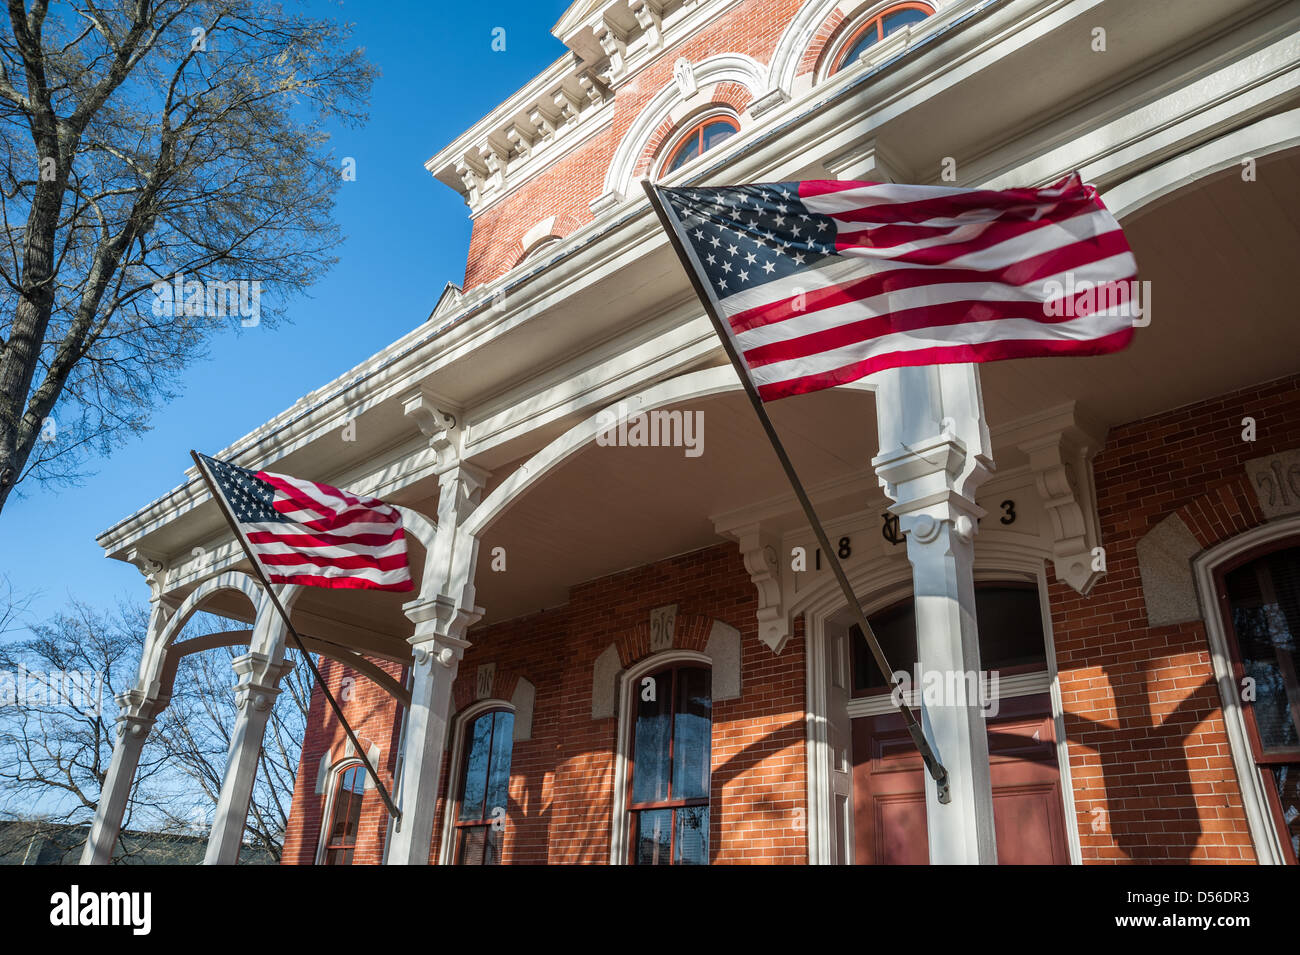 Brandissant des drapeaux américains du porche posts du palais de justice du comté de Walton historique sur la place en centre-ville de Monroe, Michigan. Banque D'Images